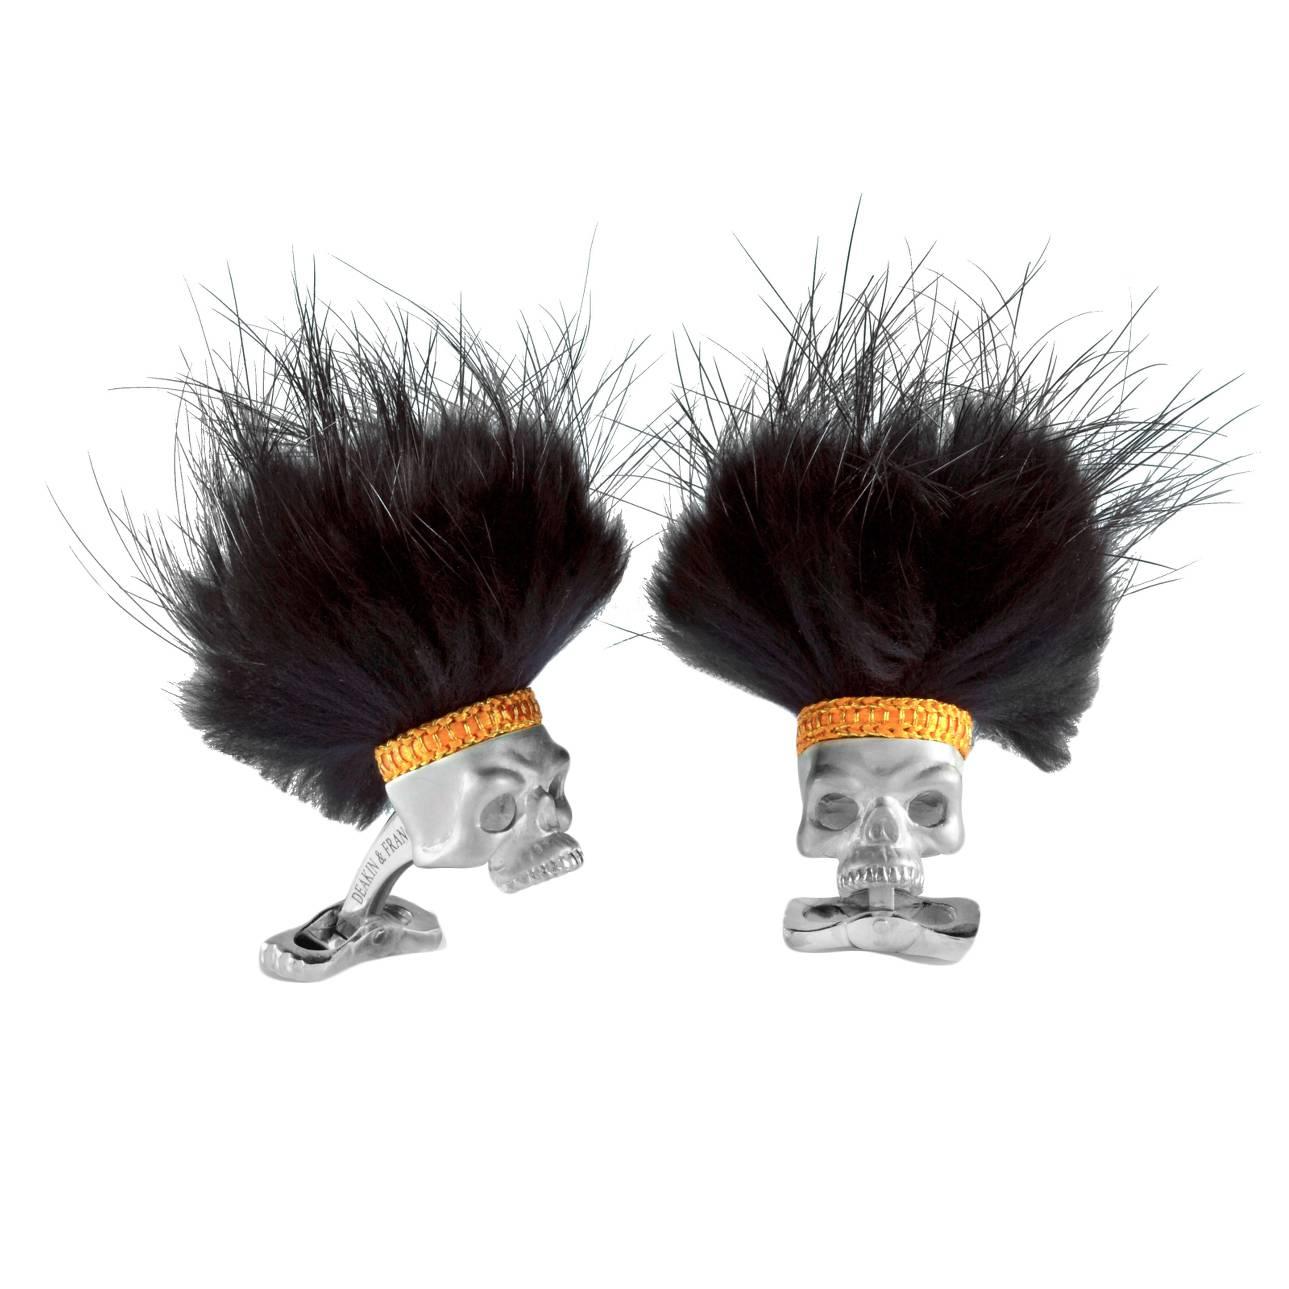 Deakin & Francis Sterlingsilber Schädel-Manschettenknöpfe mit schwarzem Haar